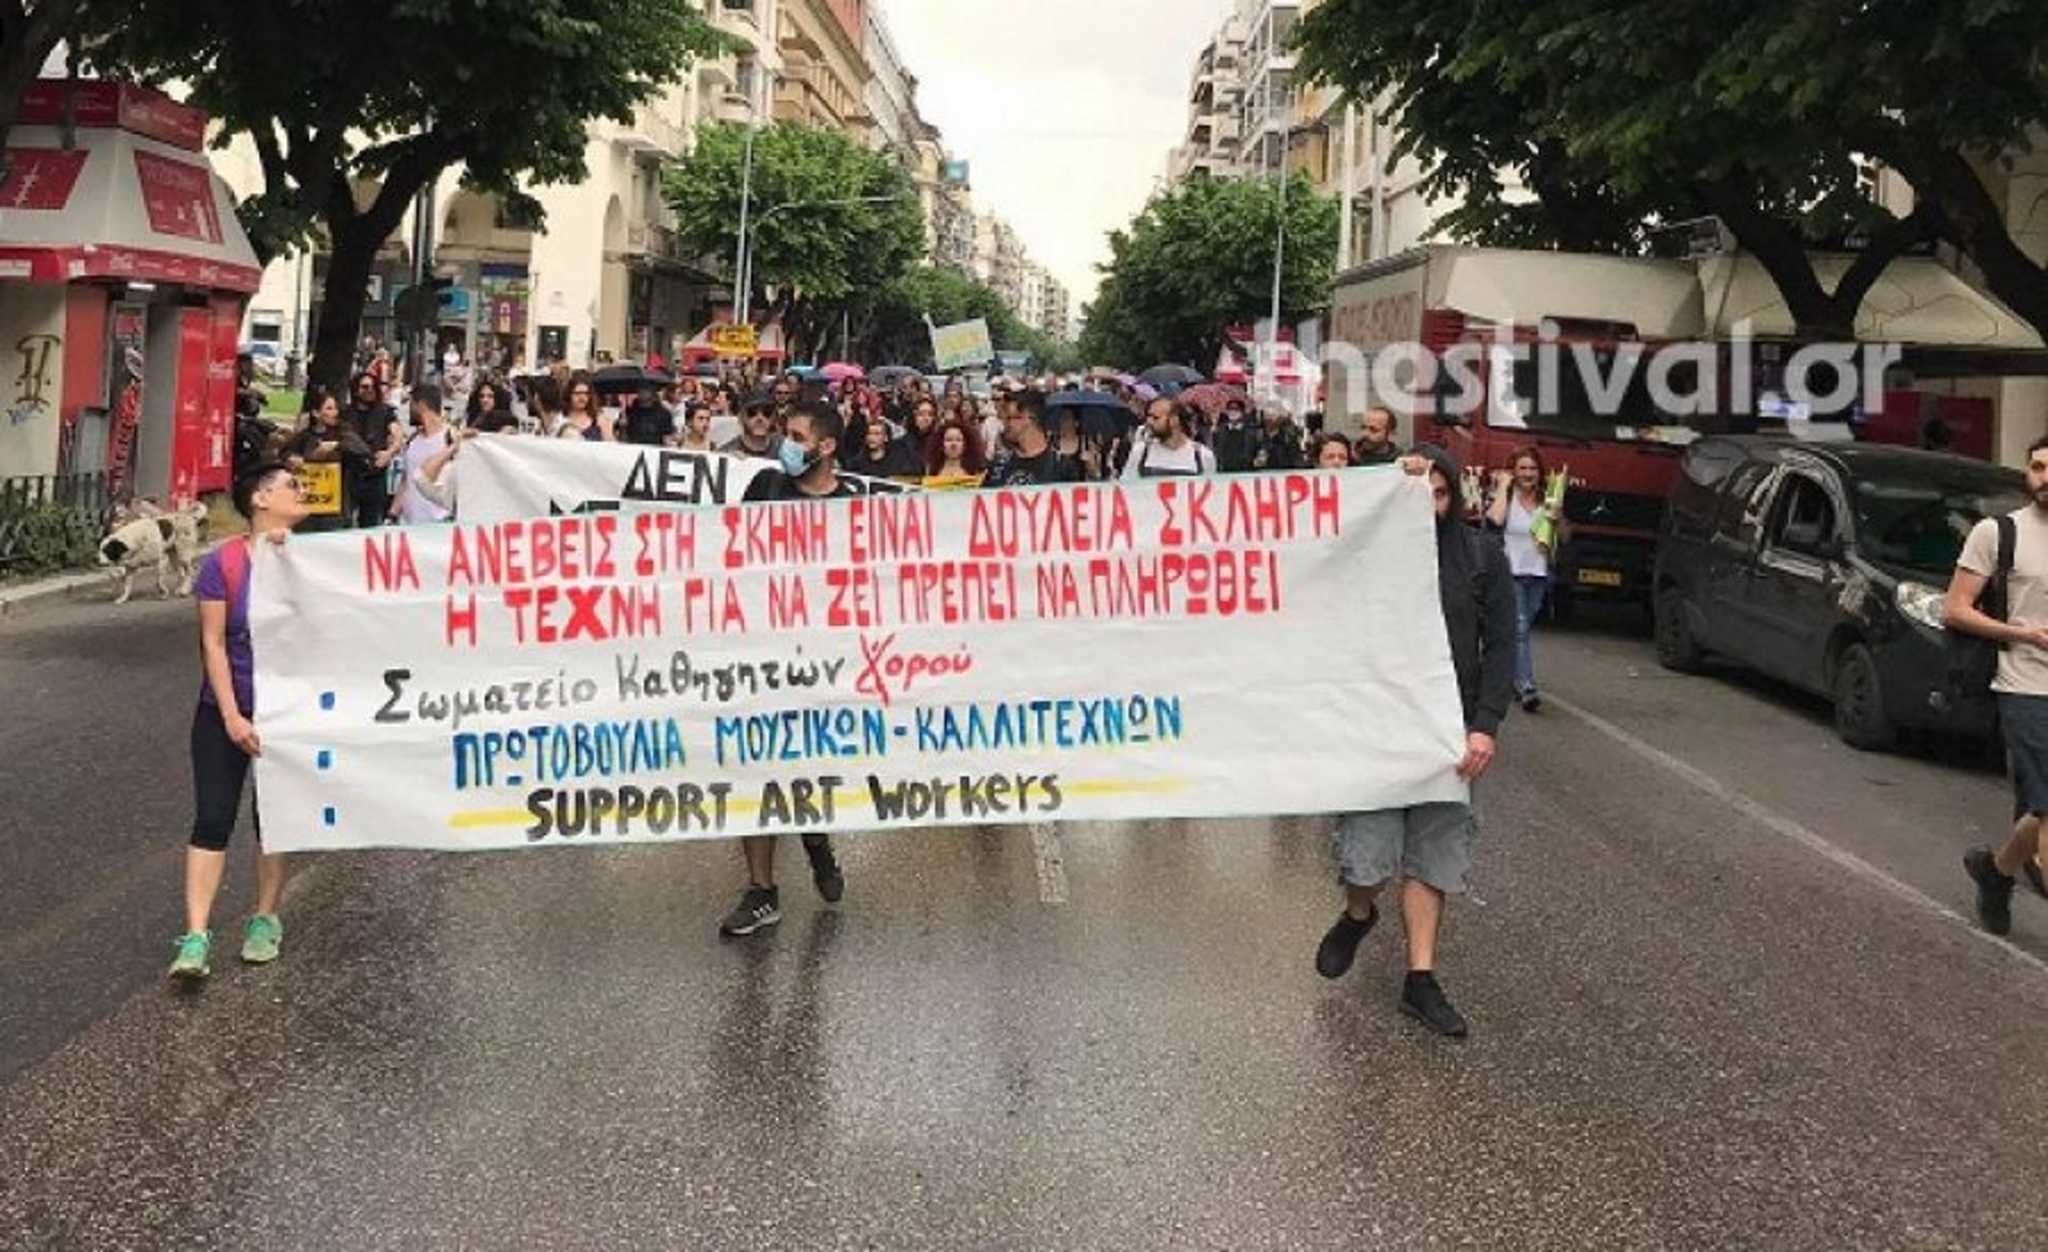  Θεσσαλονίκη | Πορεία καλλιτεχνών στο κέντρο της πόλης! “Τα μέτρα δεν είναι αρκετά” (VIDEO)